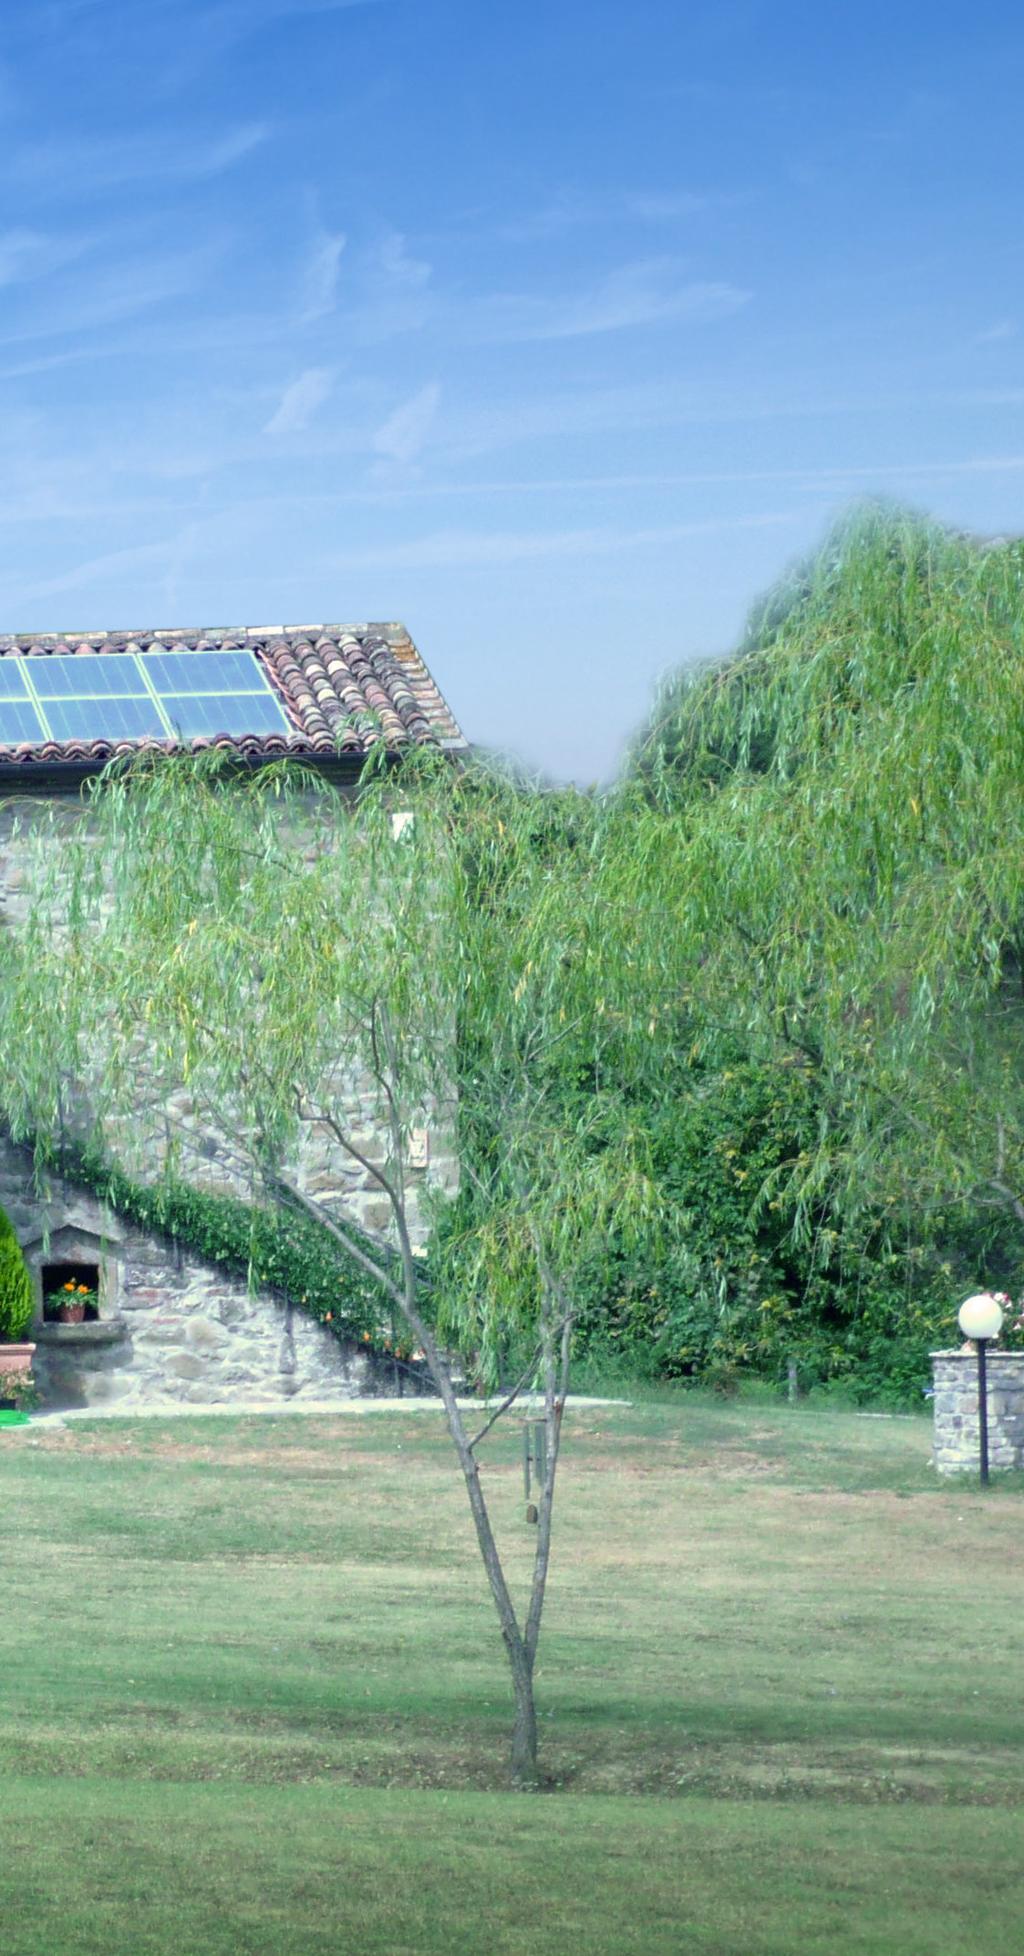 le soluzioni energetiche Solex Gentile cliente, Solex è una azienda Italiana presente sul mercato con esperienza nella distribuzione di sistemi energetici in Italia ed all estero.